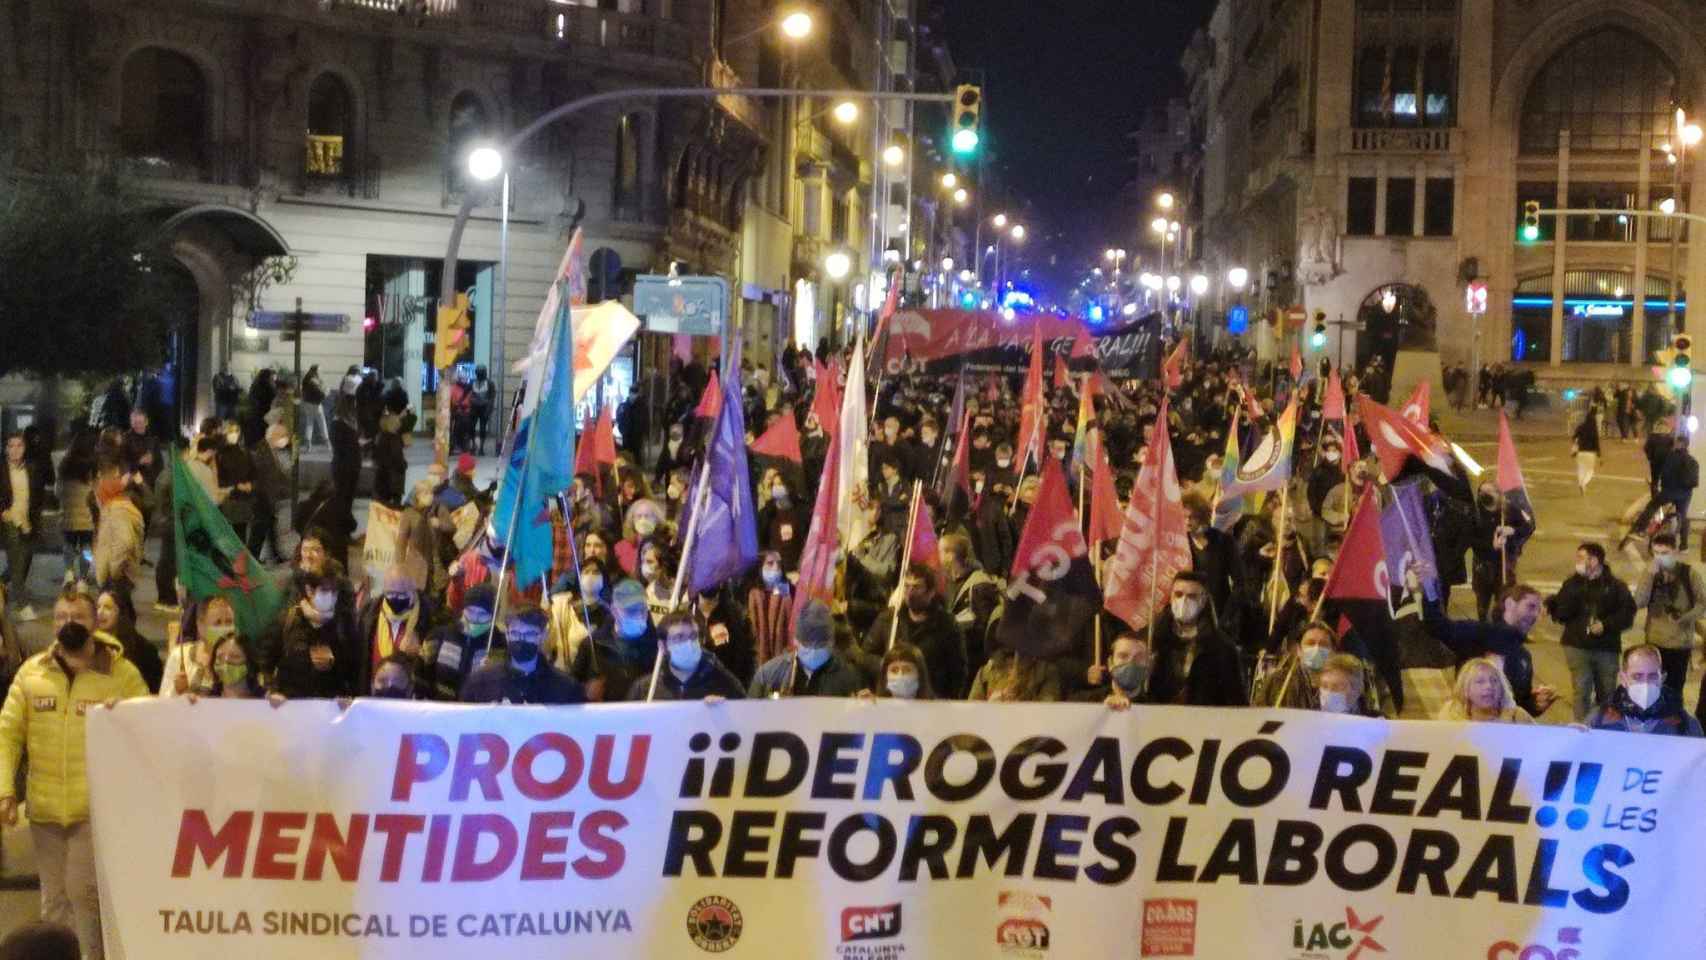 Imagen de la protesta contra la reforma laboral del Gobierno en Via Laietana / CGT CATALUNYA